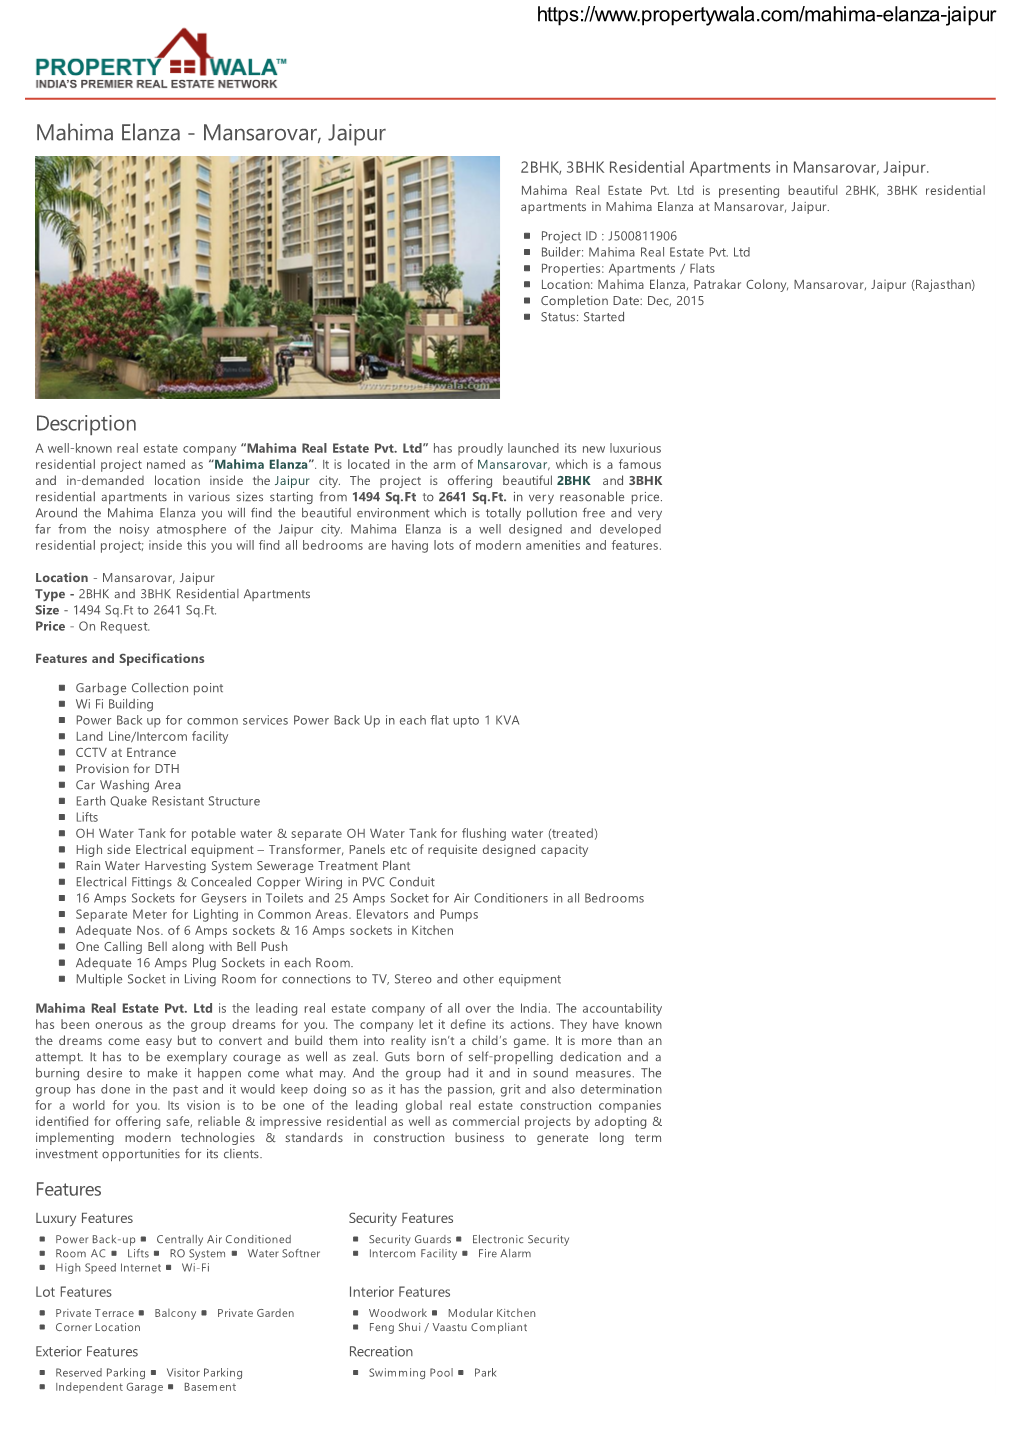 Mahima Elanza - Mansarovar, Jaipur 2BHK, 3BHK Residential Apartments in Mansarovar, Jaipur